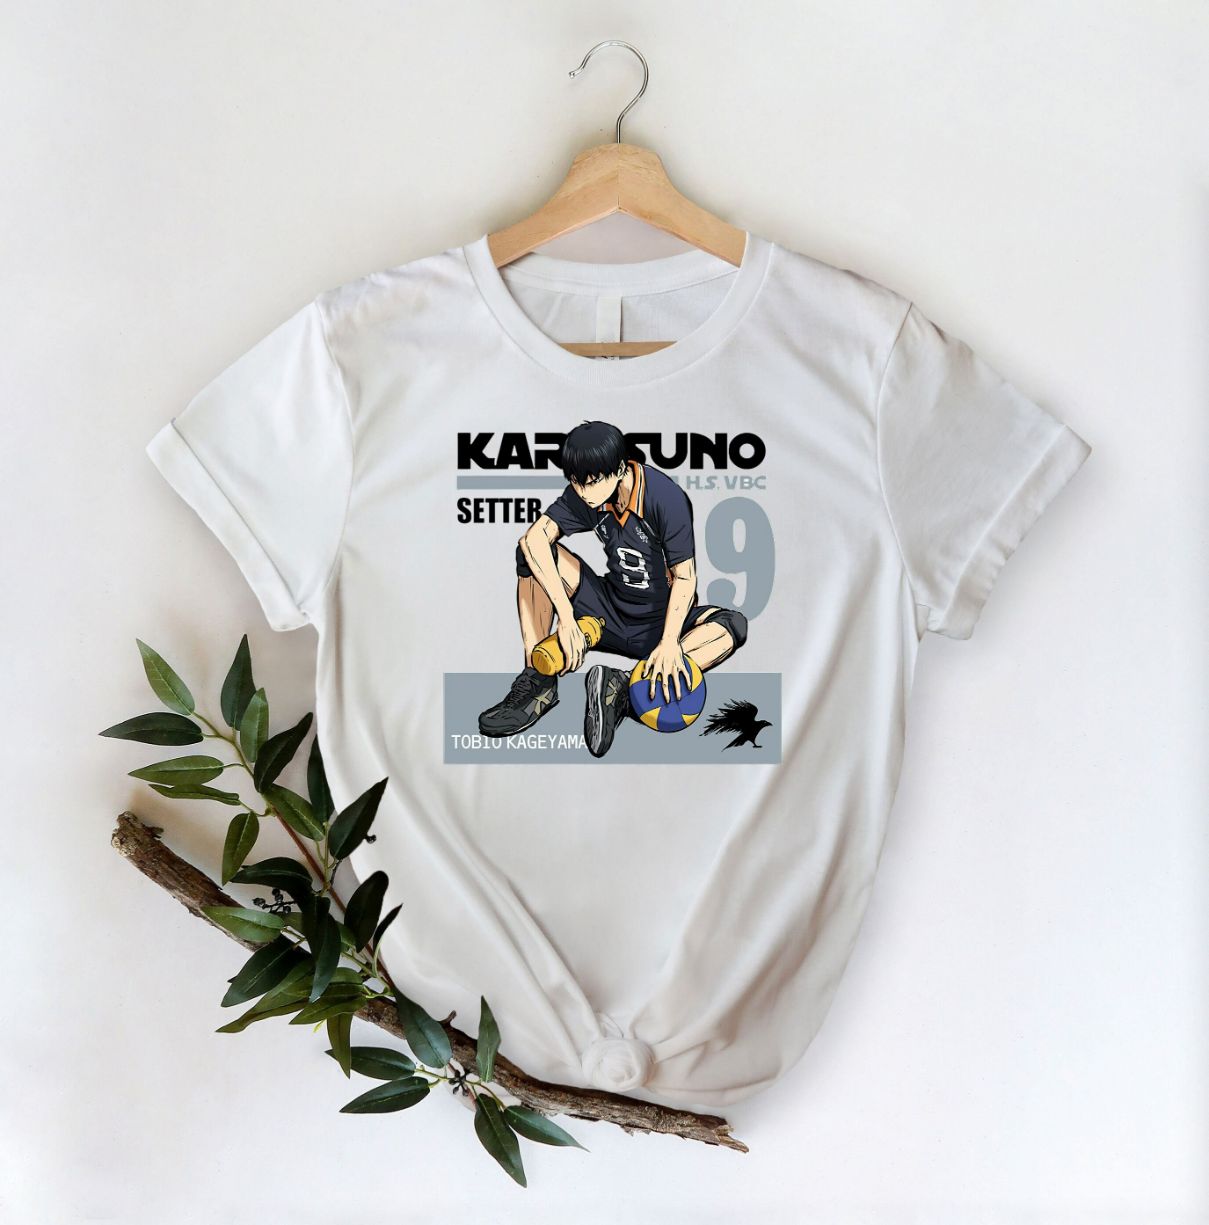 Haikyuu Anime Karasuno Shirt